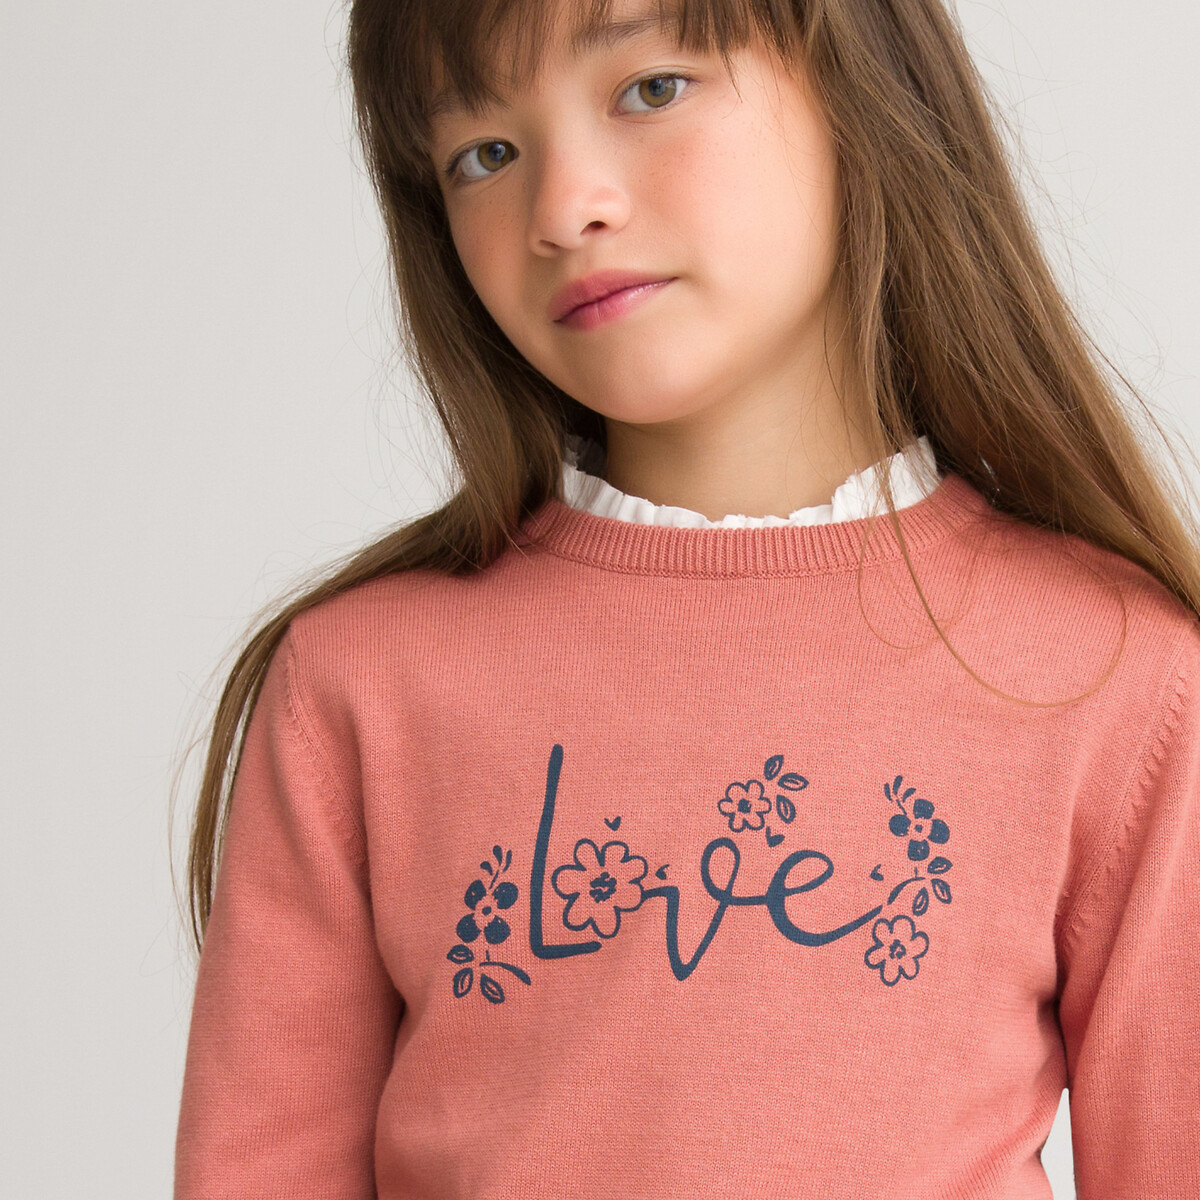 Пуловер LaRedoute С круглым вырезом из тонкого трикотажа с принтом 3-12 лет 5 лет - 108 см розовый, размер 5 лет - 108 см